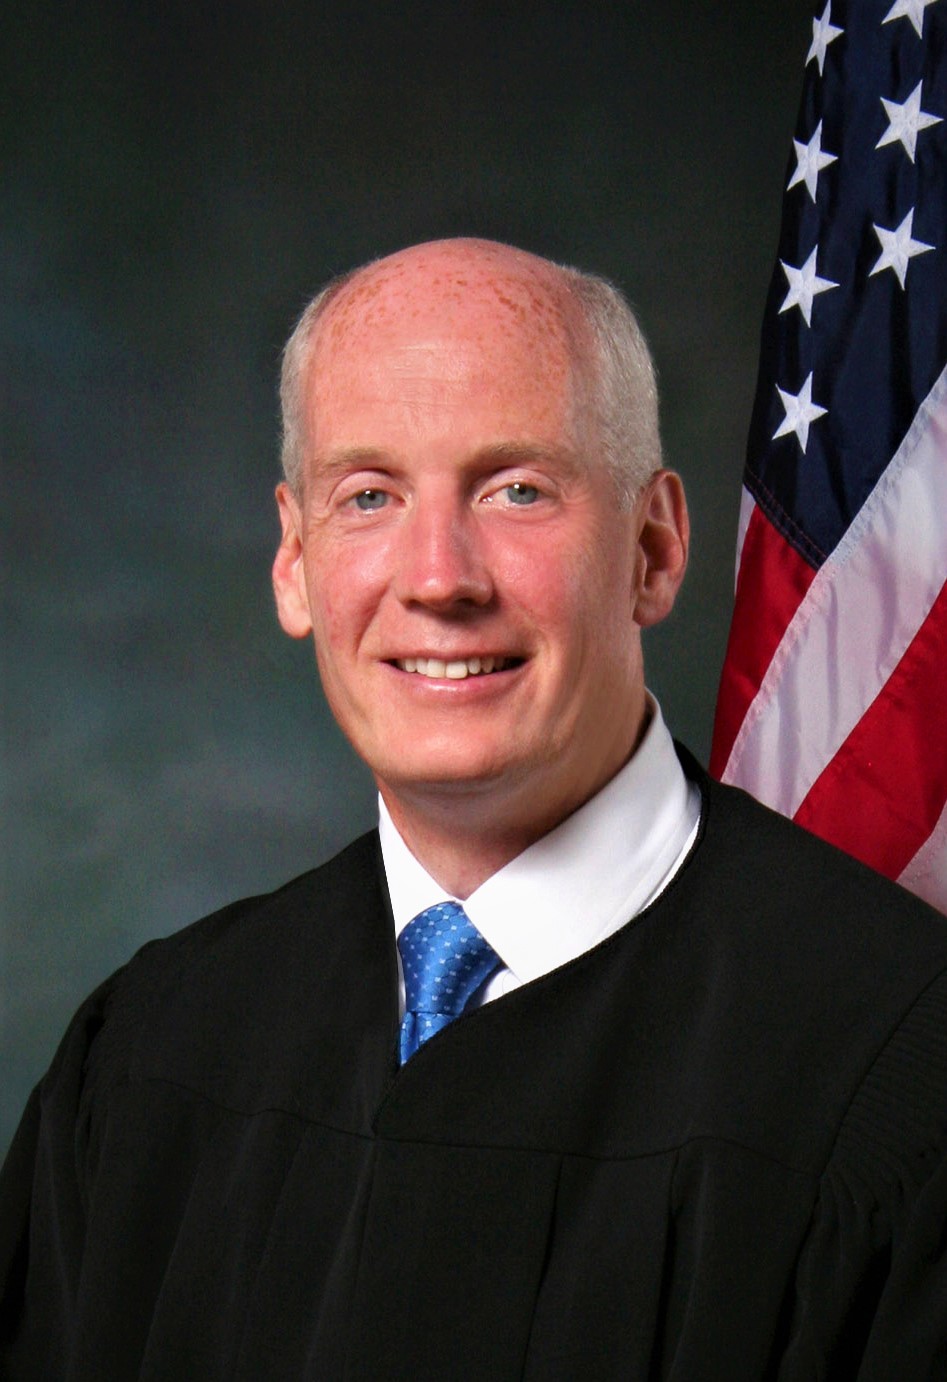 Judge Paul R. Wallace